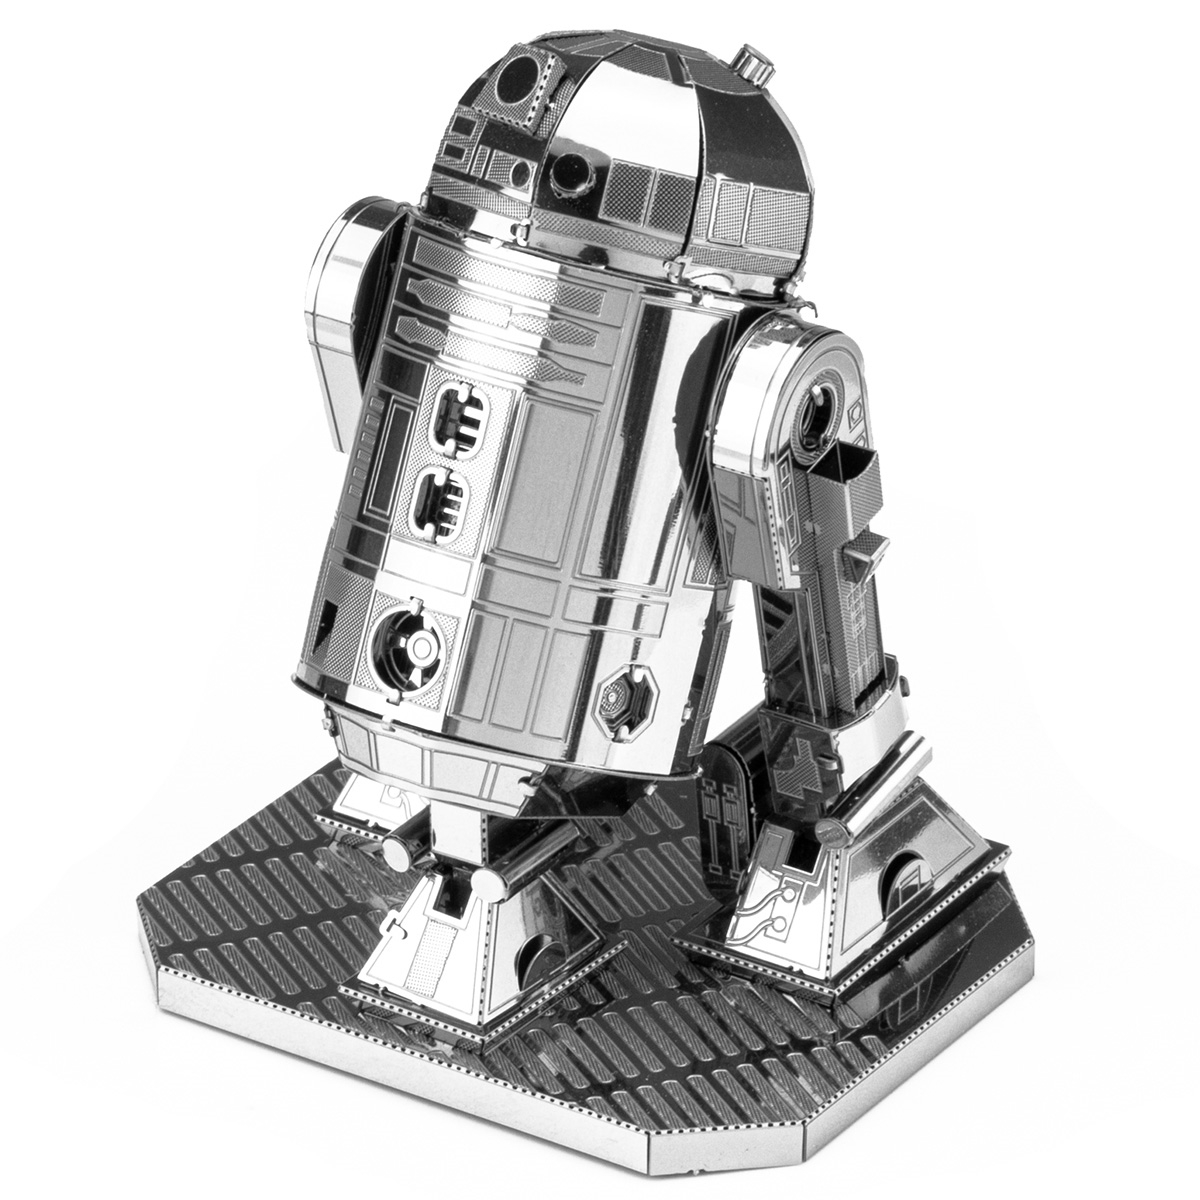 Fascinations Metal Earth STAR WARS R2-D2 Licensed 3-D Laser Cut Robot Model 